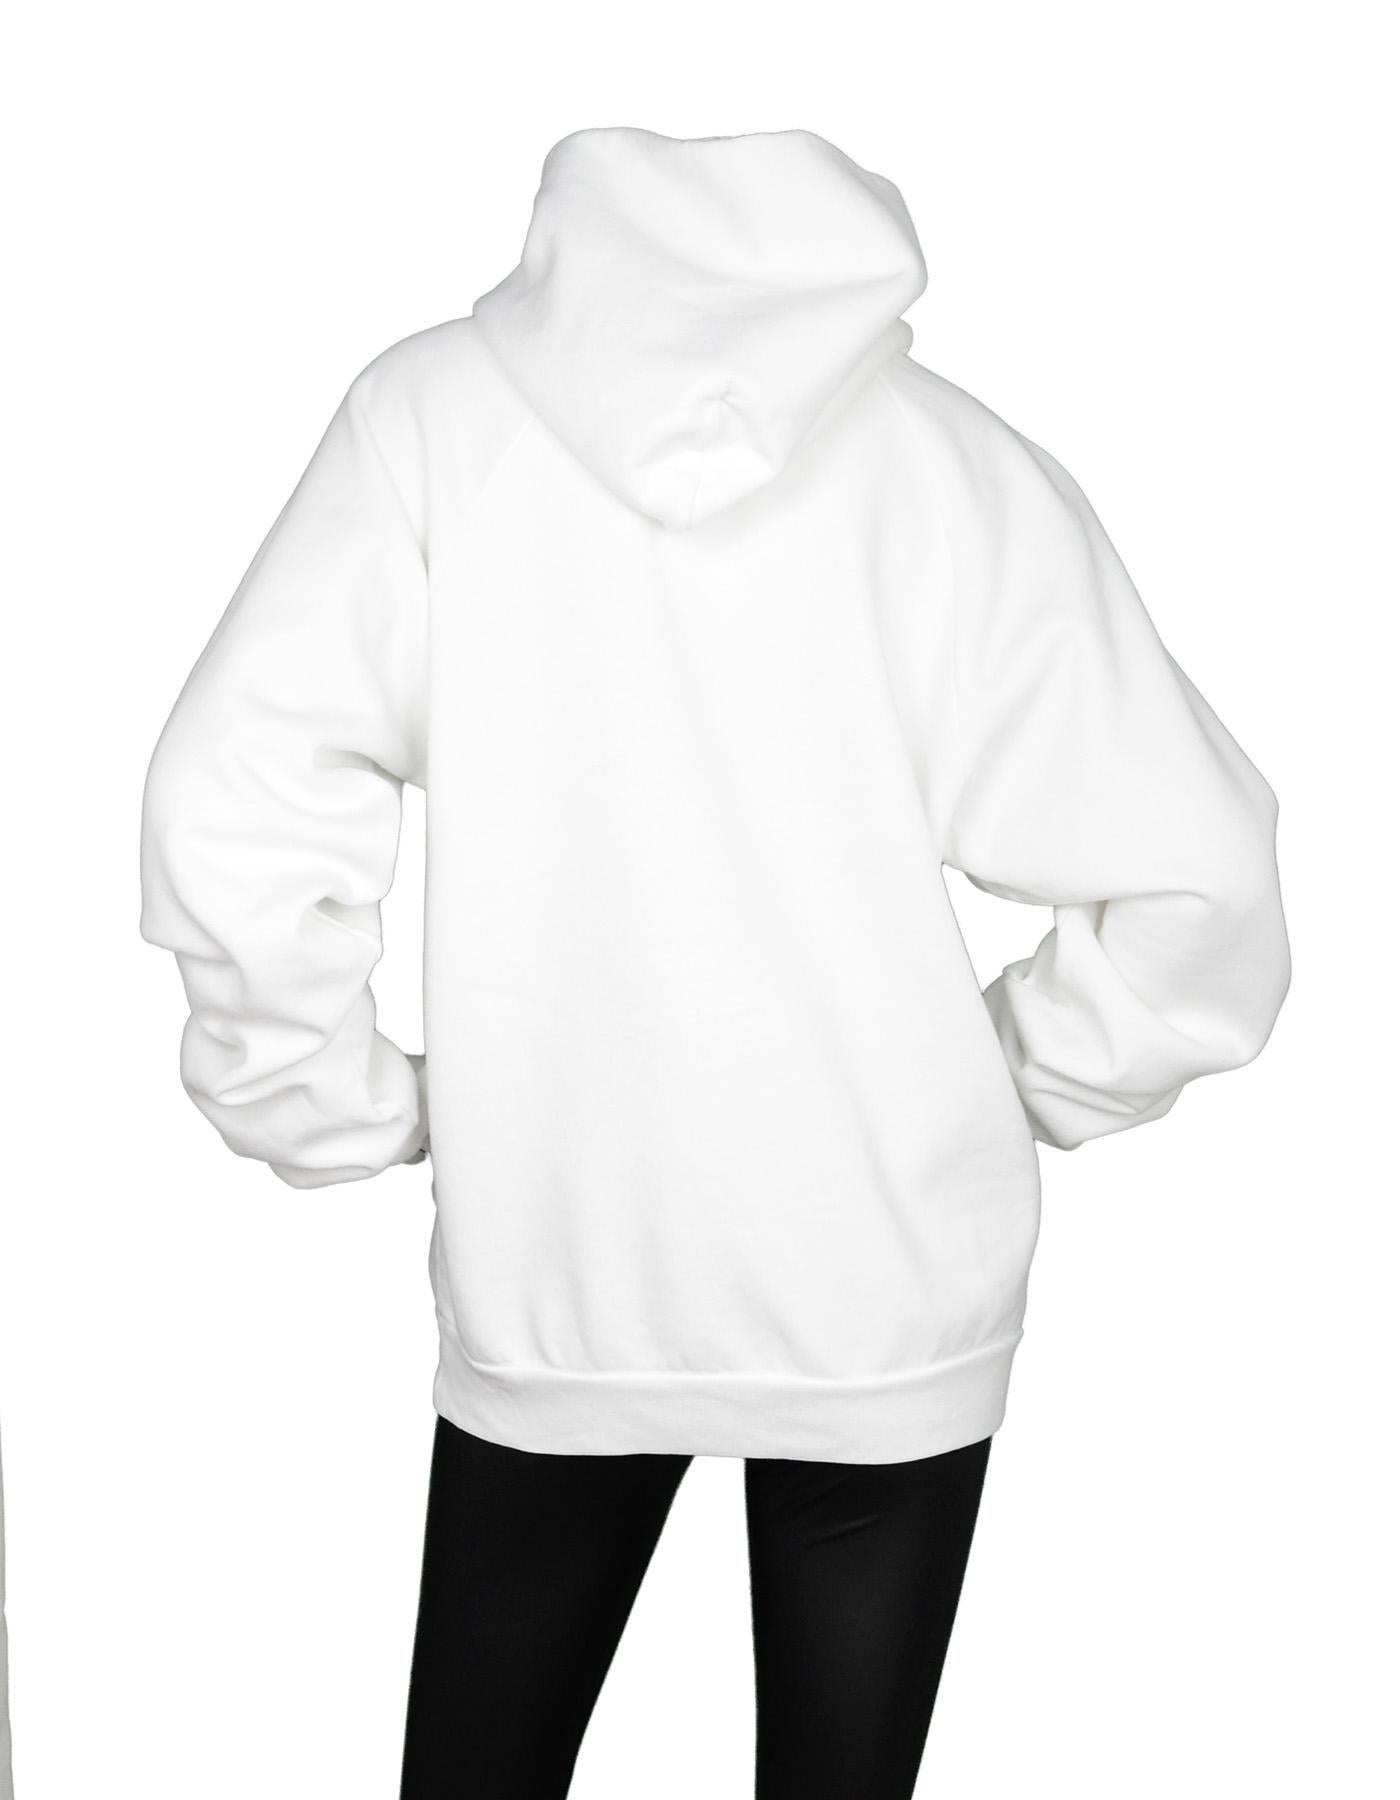 balenciaga - men's bb balenciaga mode hoodie white - size xs - cotton and polyester